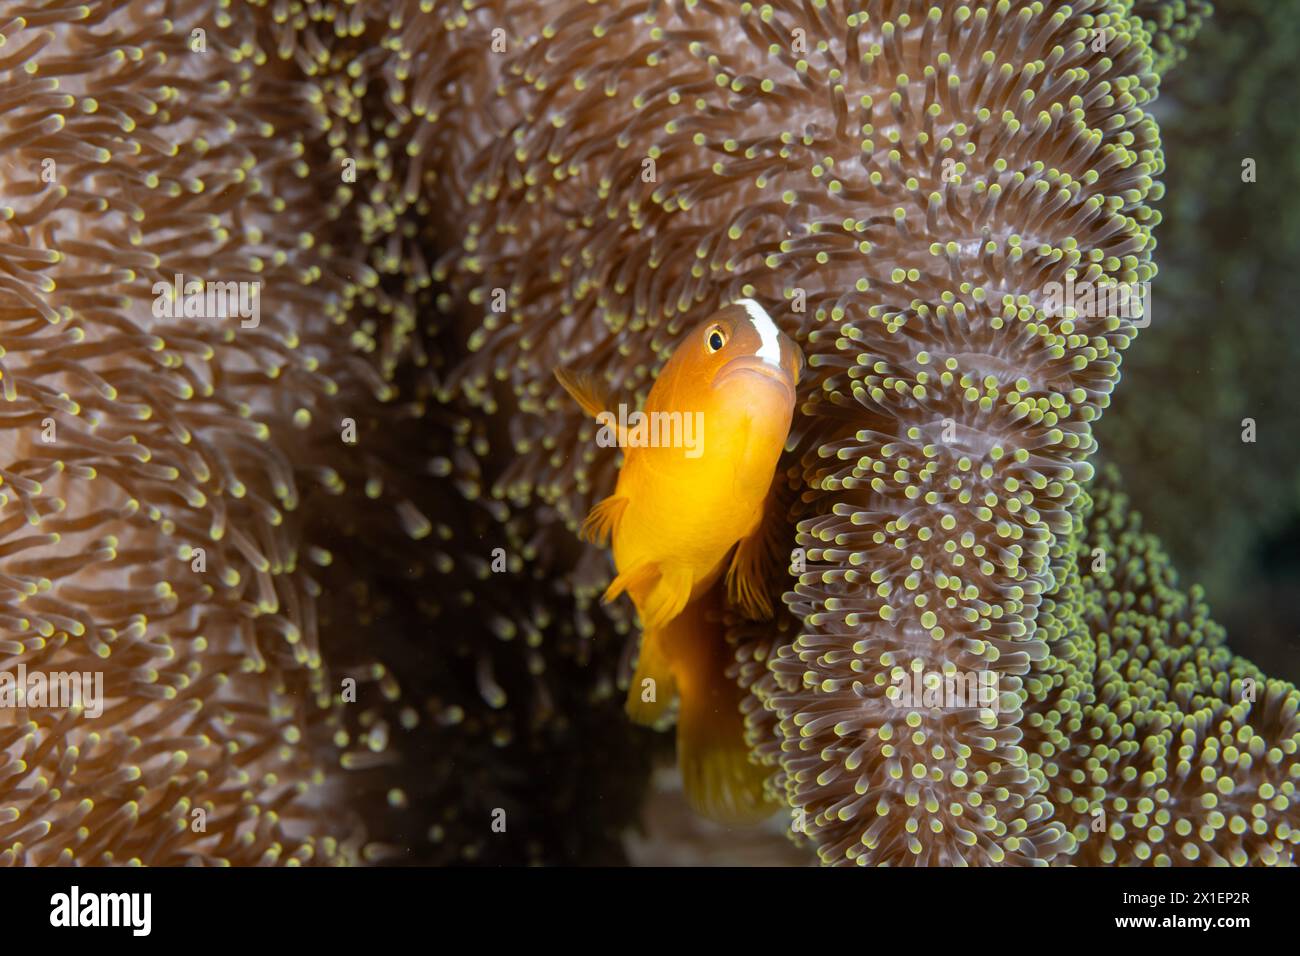 Orange Anemonfische Amphiprion sandaracinos in einer Merten-Meeresanemone, Raja Ampat Indonesia Stockfoto